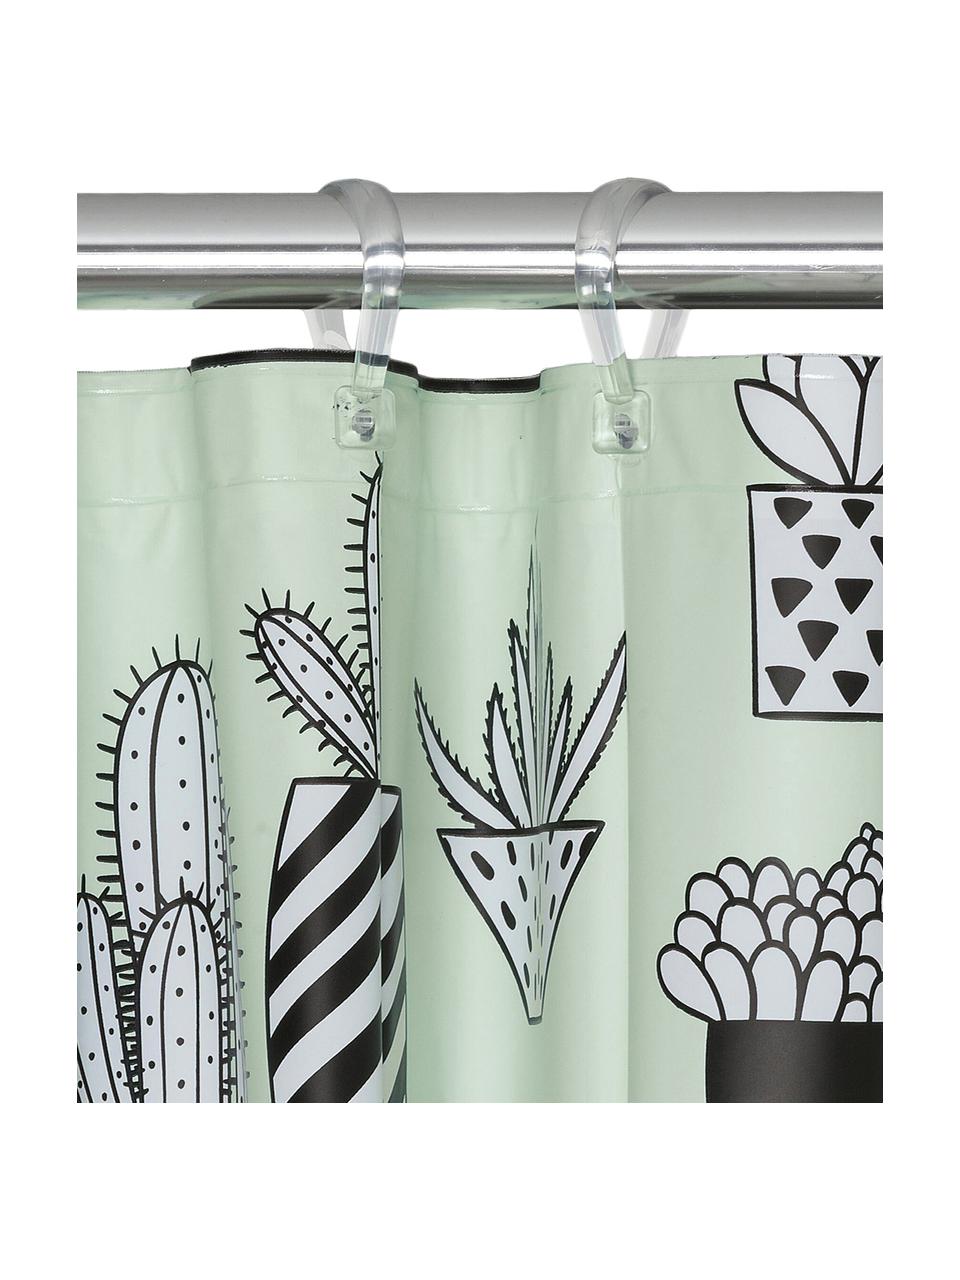 Zasłona prysznicowa Cactus, Tworzywo sztuczne (PEVA)
Produkt wodoodporny, Zielony, czarny, biały, S 180 x D 200 cm